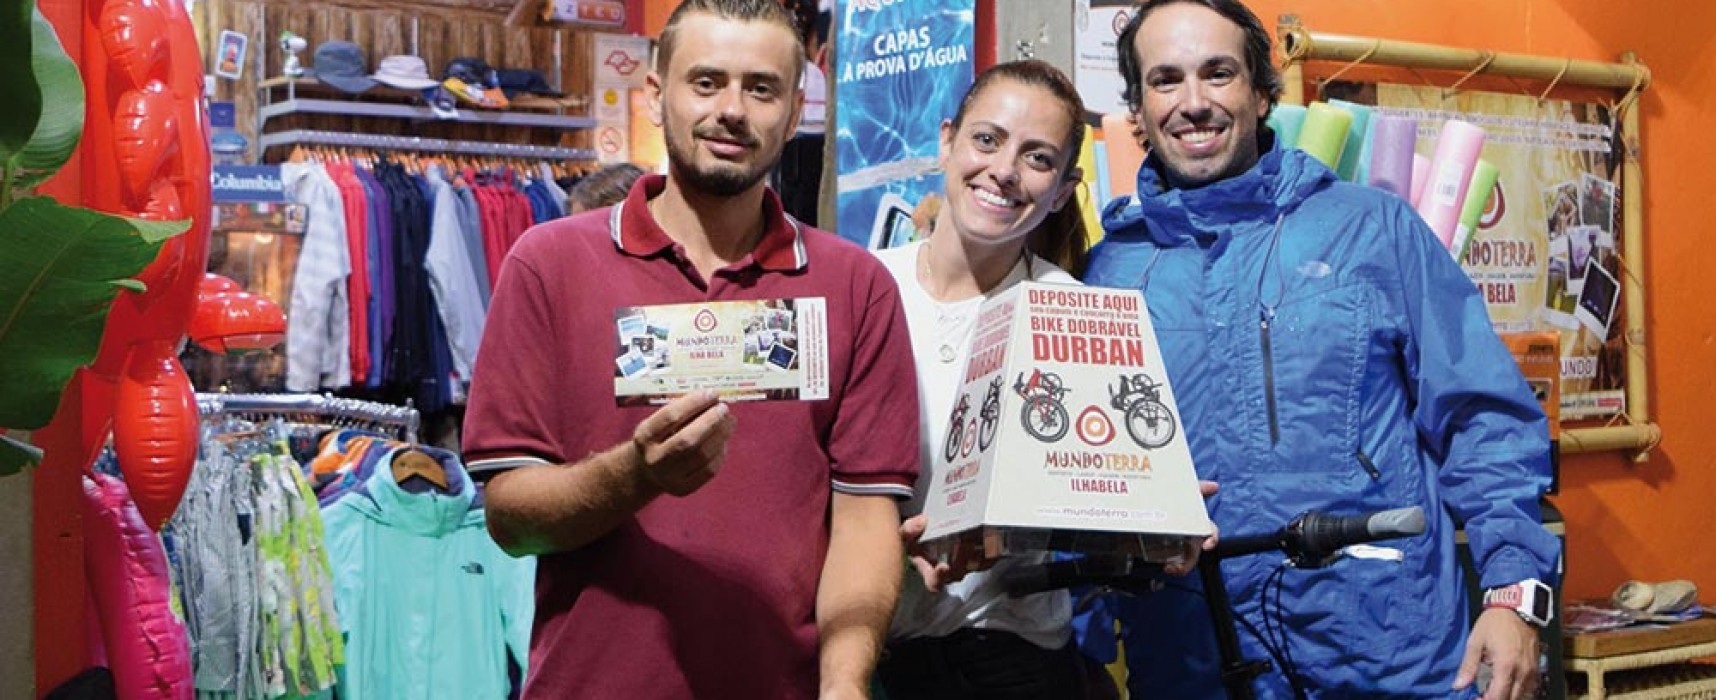 Mundo Terra sorteou bike Durban em Ilhabela